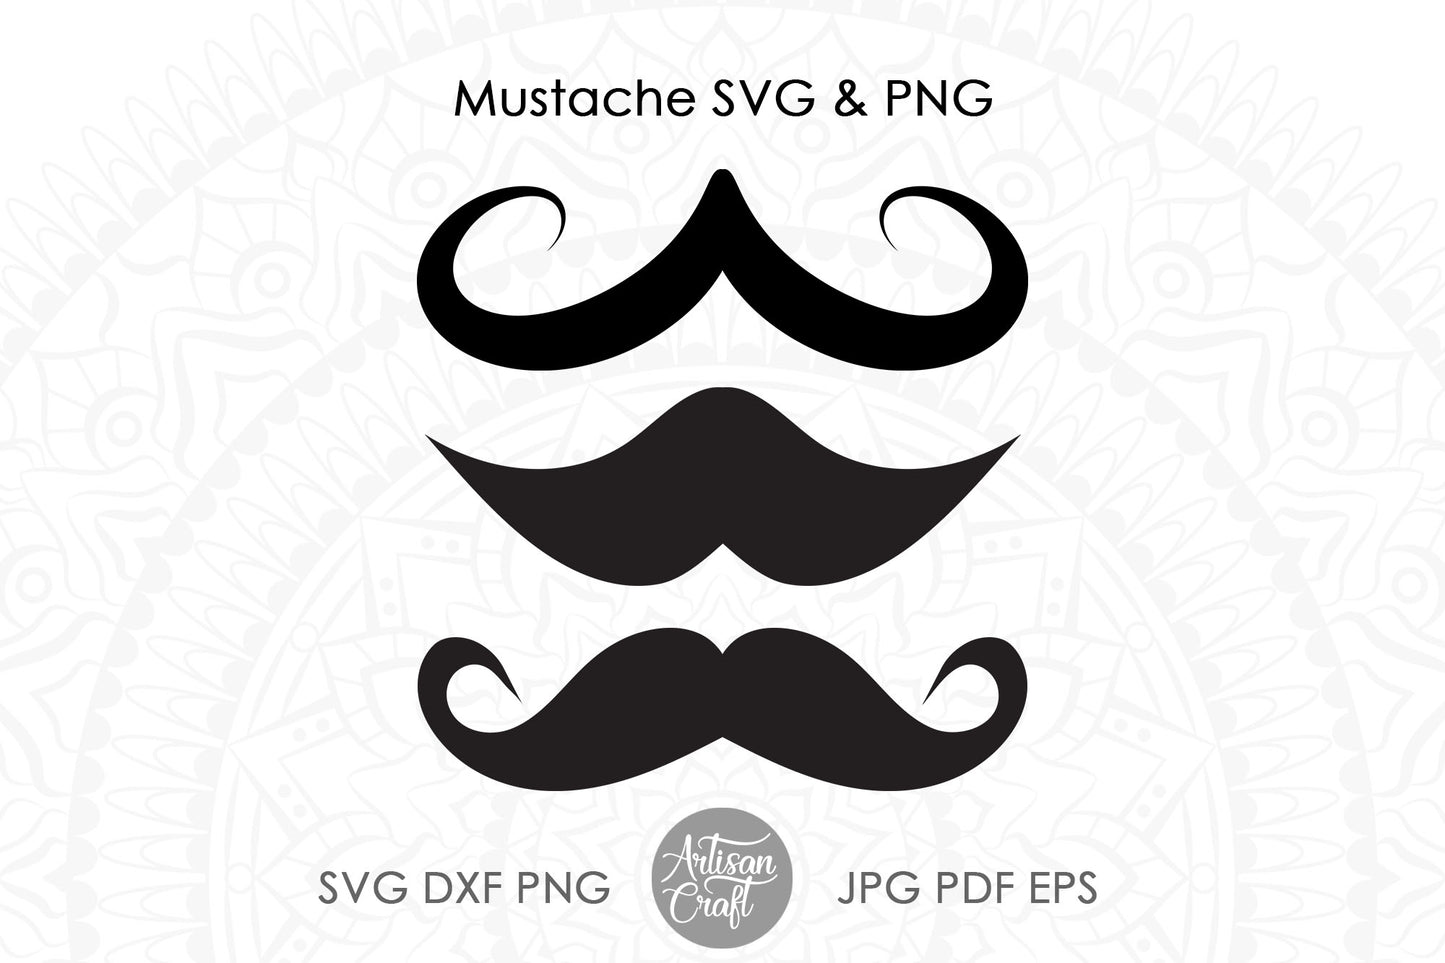 Mustache SVG, mustache clipart, moustache SVG